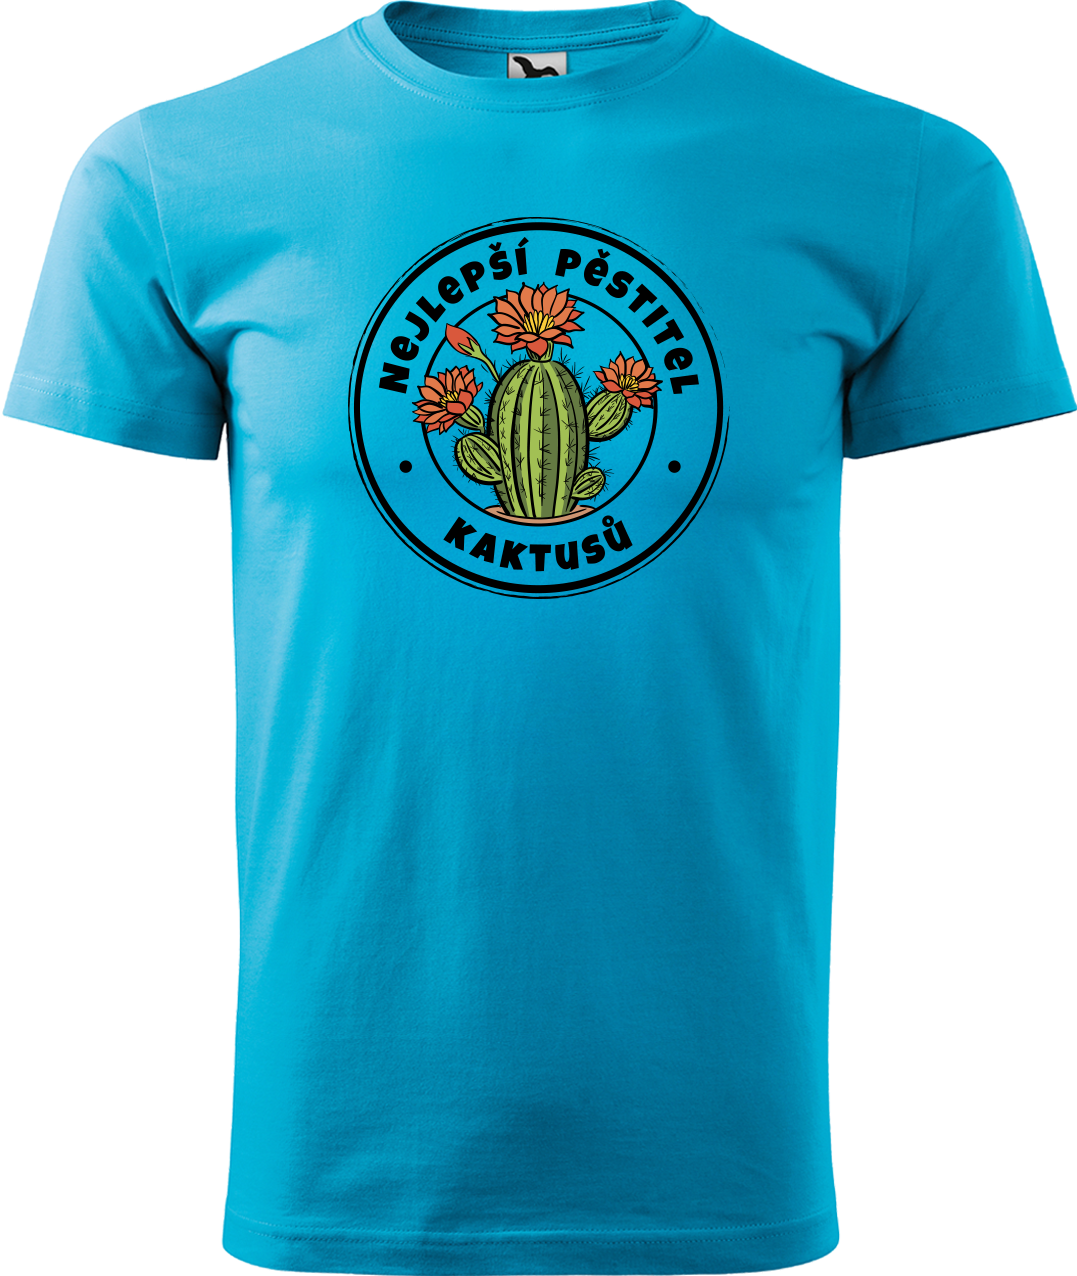 Tričko s kaktusem - Nejlepší pěstitel kaktusů Velikost: 3XL, Barva: Tyrkysová (44)